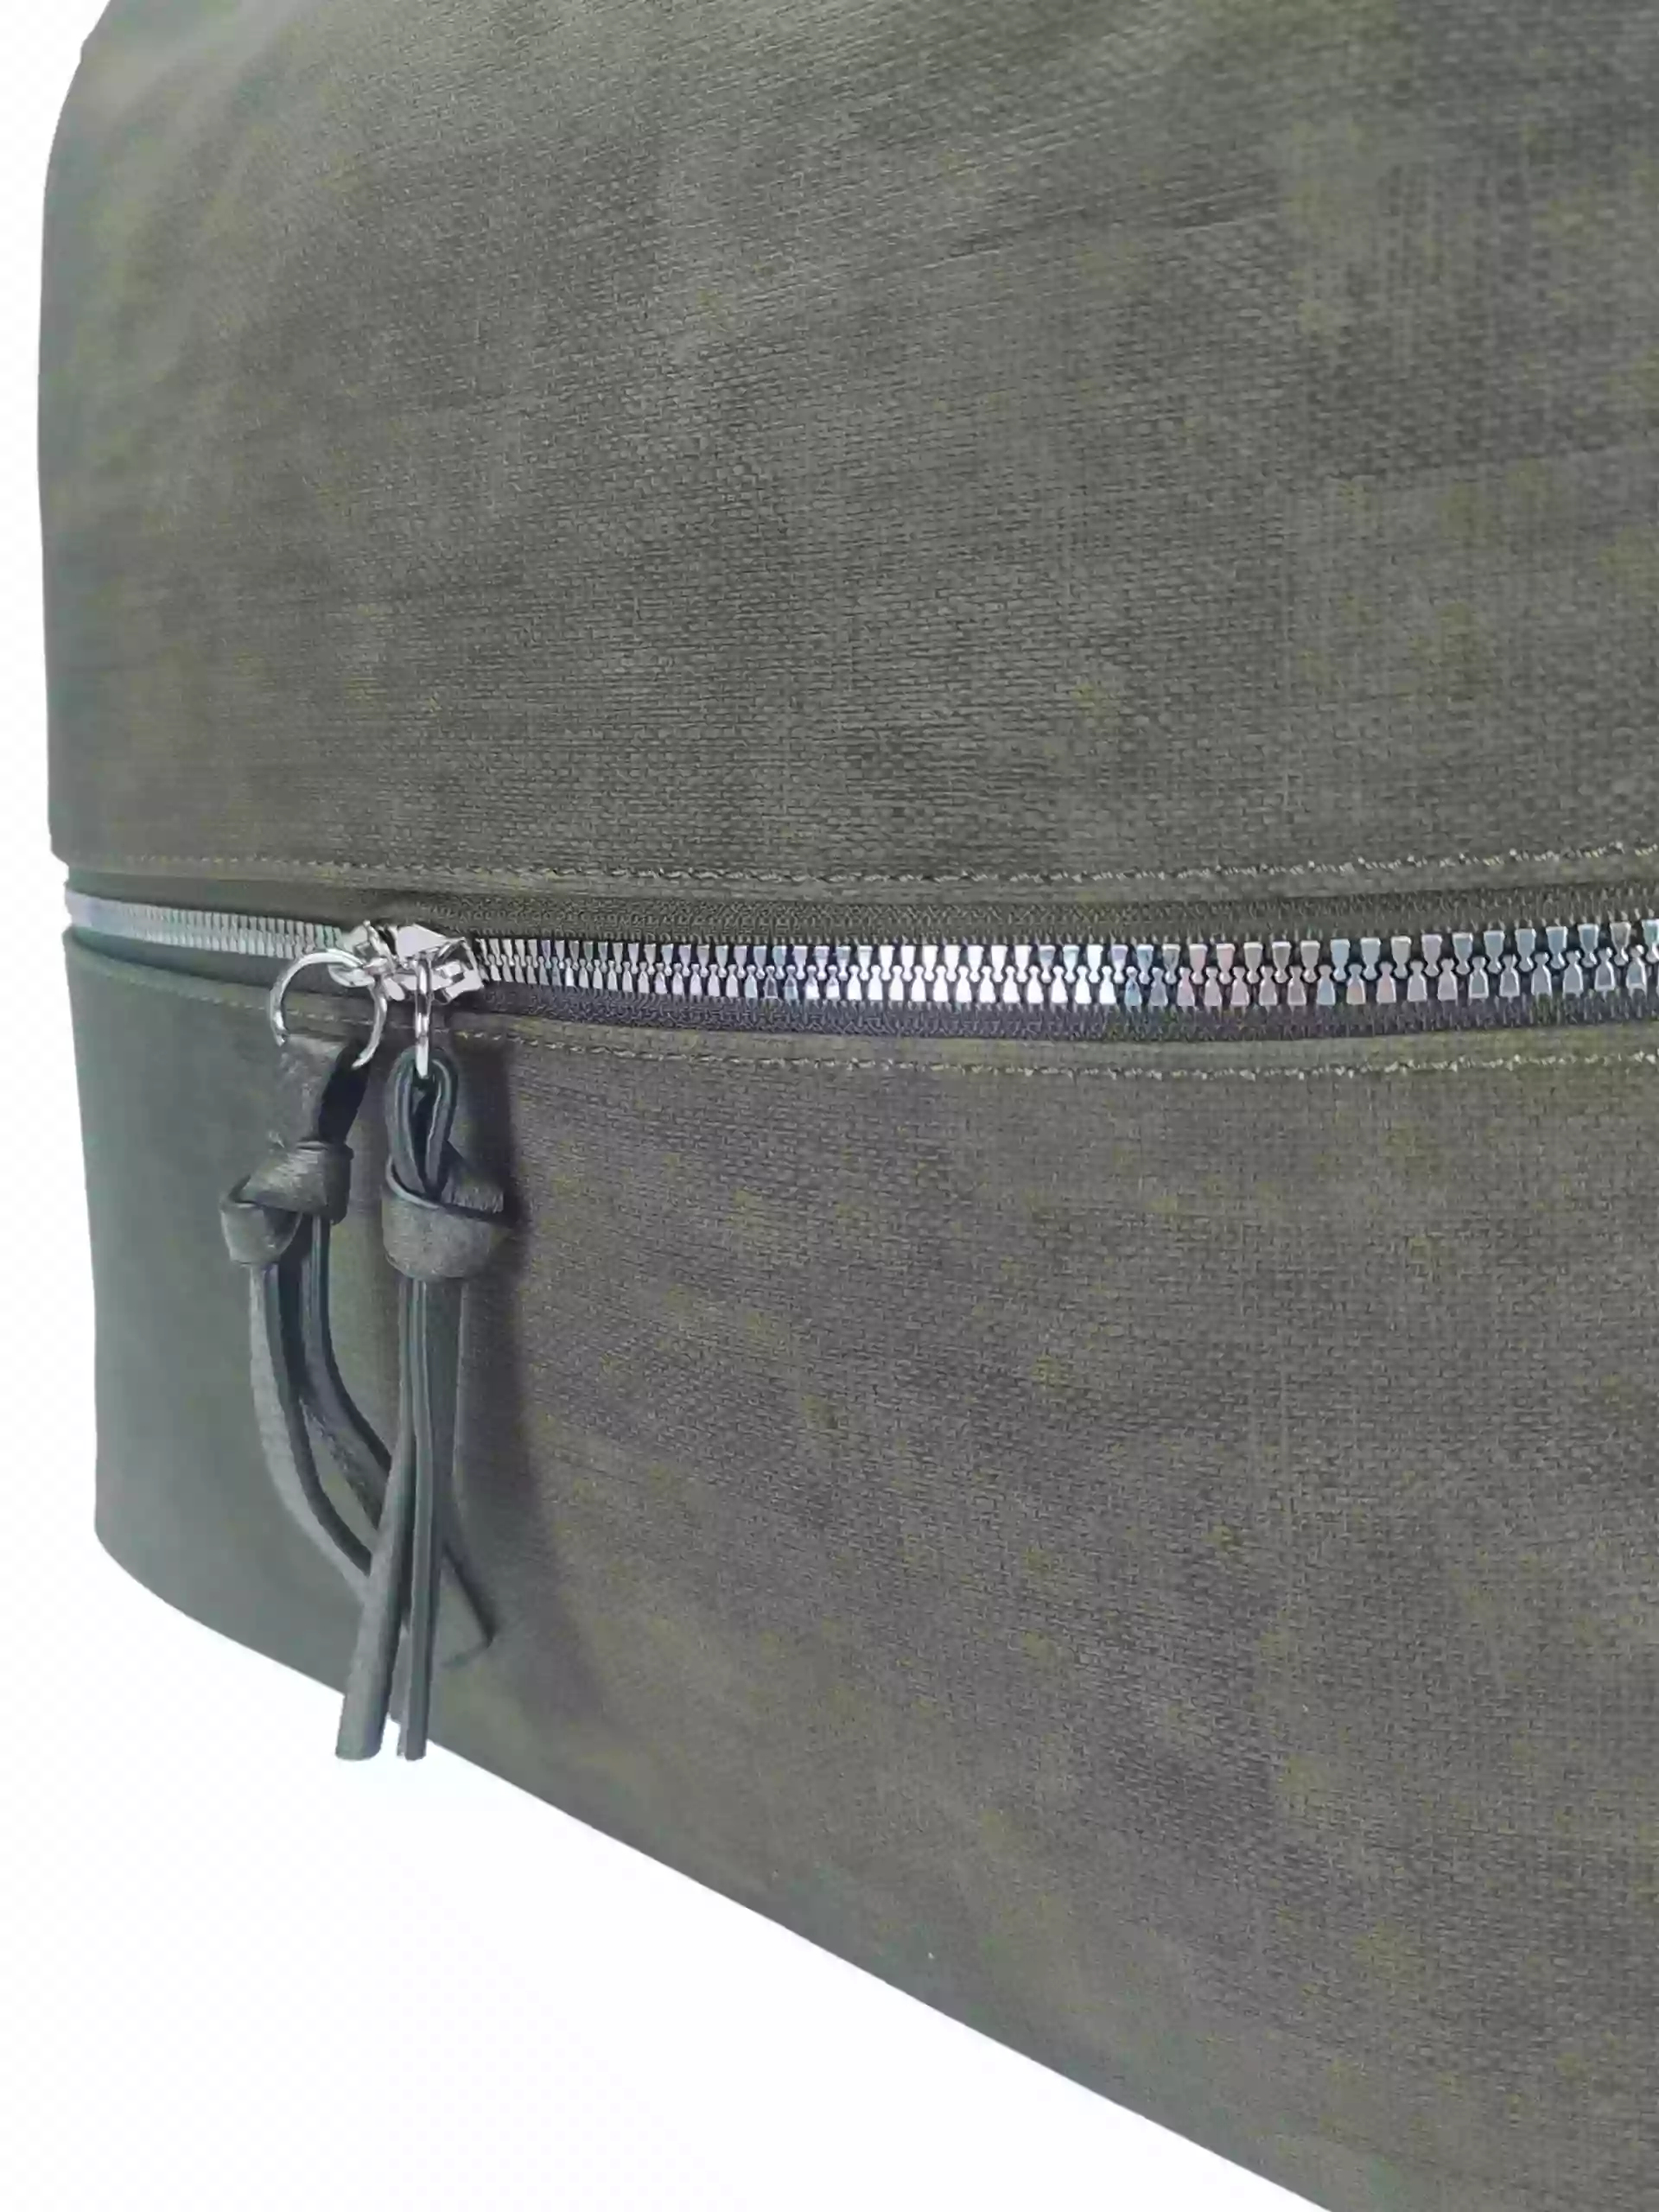 Moderní khaki kabelko-batoh z eko kůže, Tapple, H190010, vnitřní polstrování kabelko-batohu